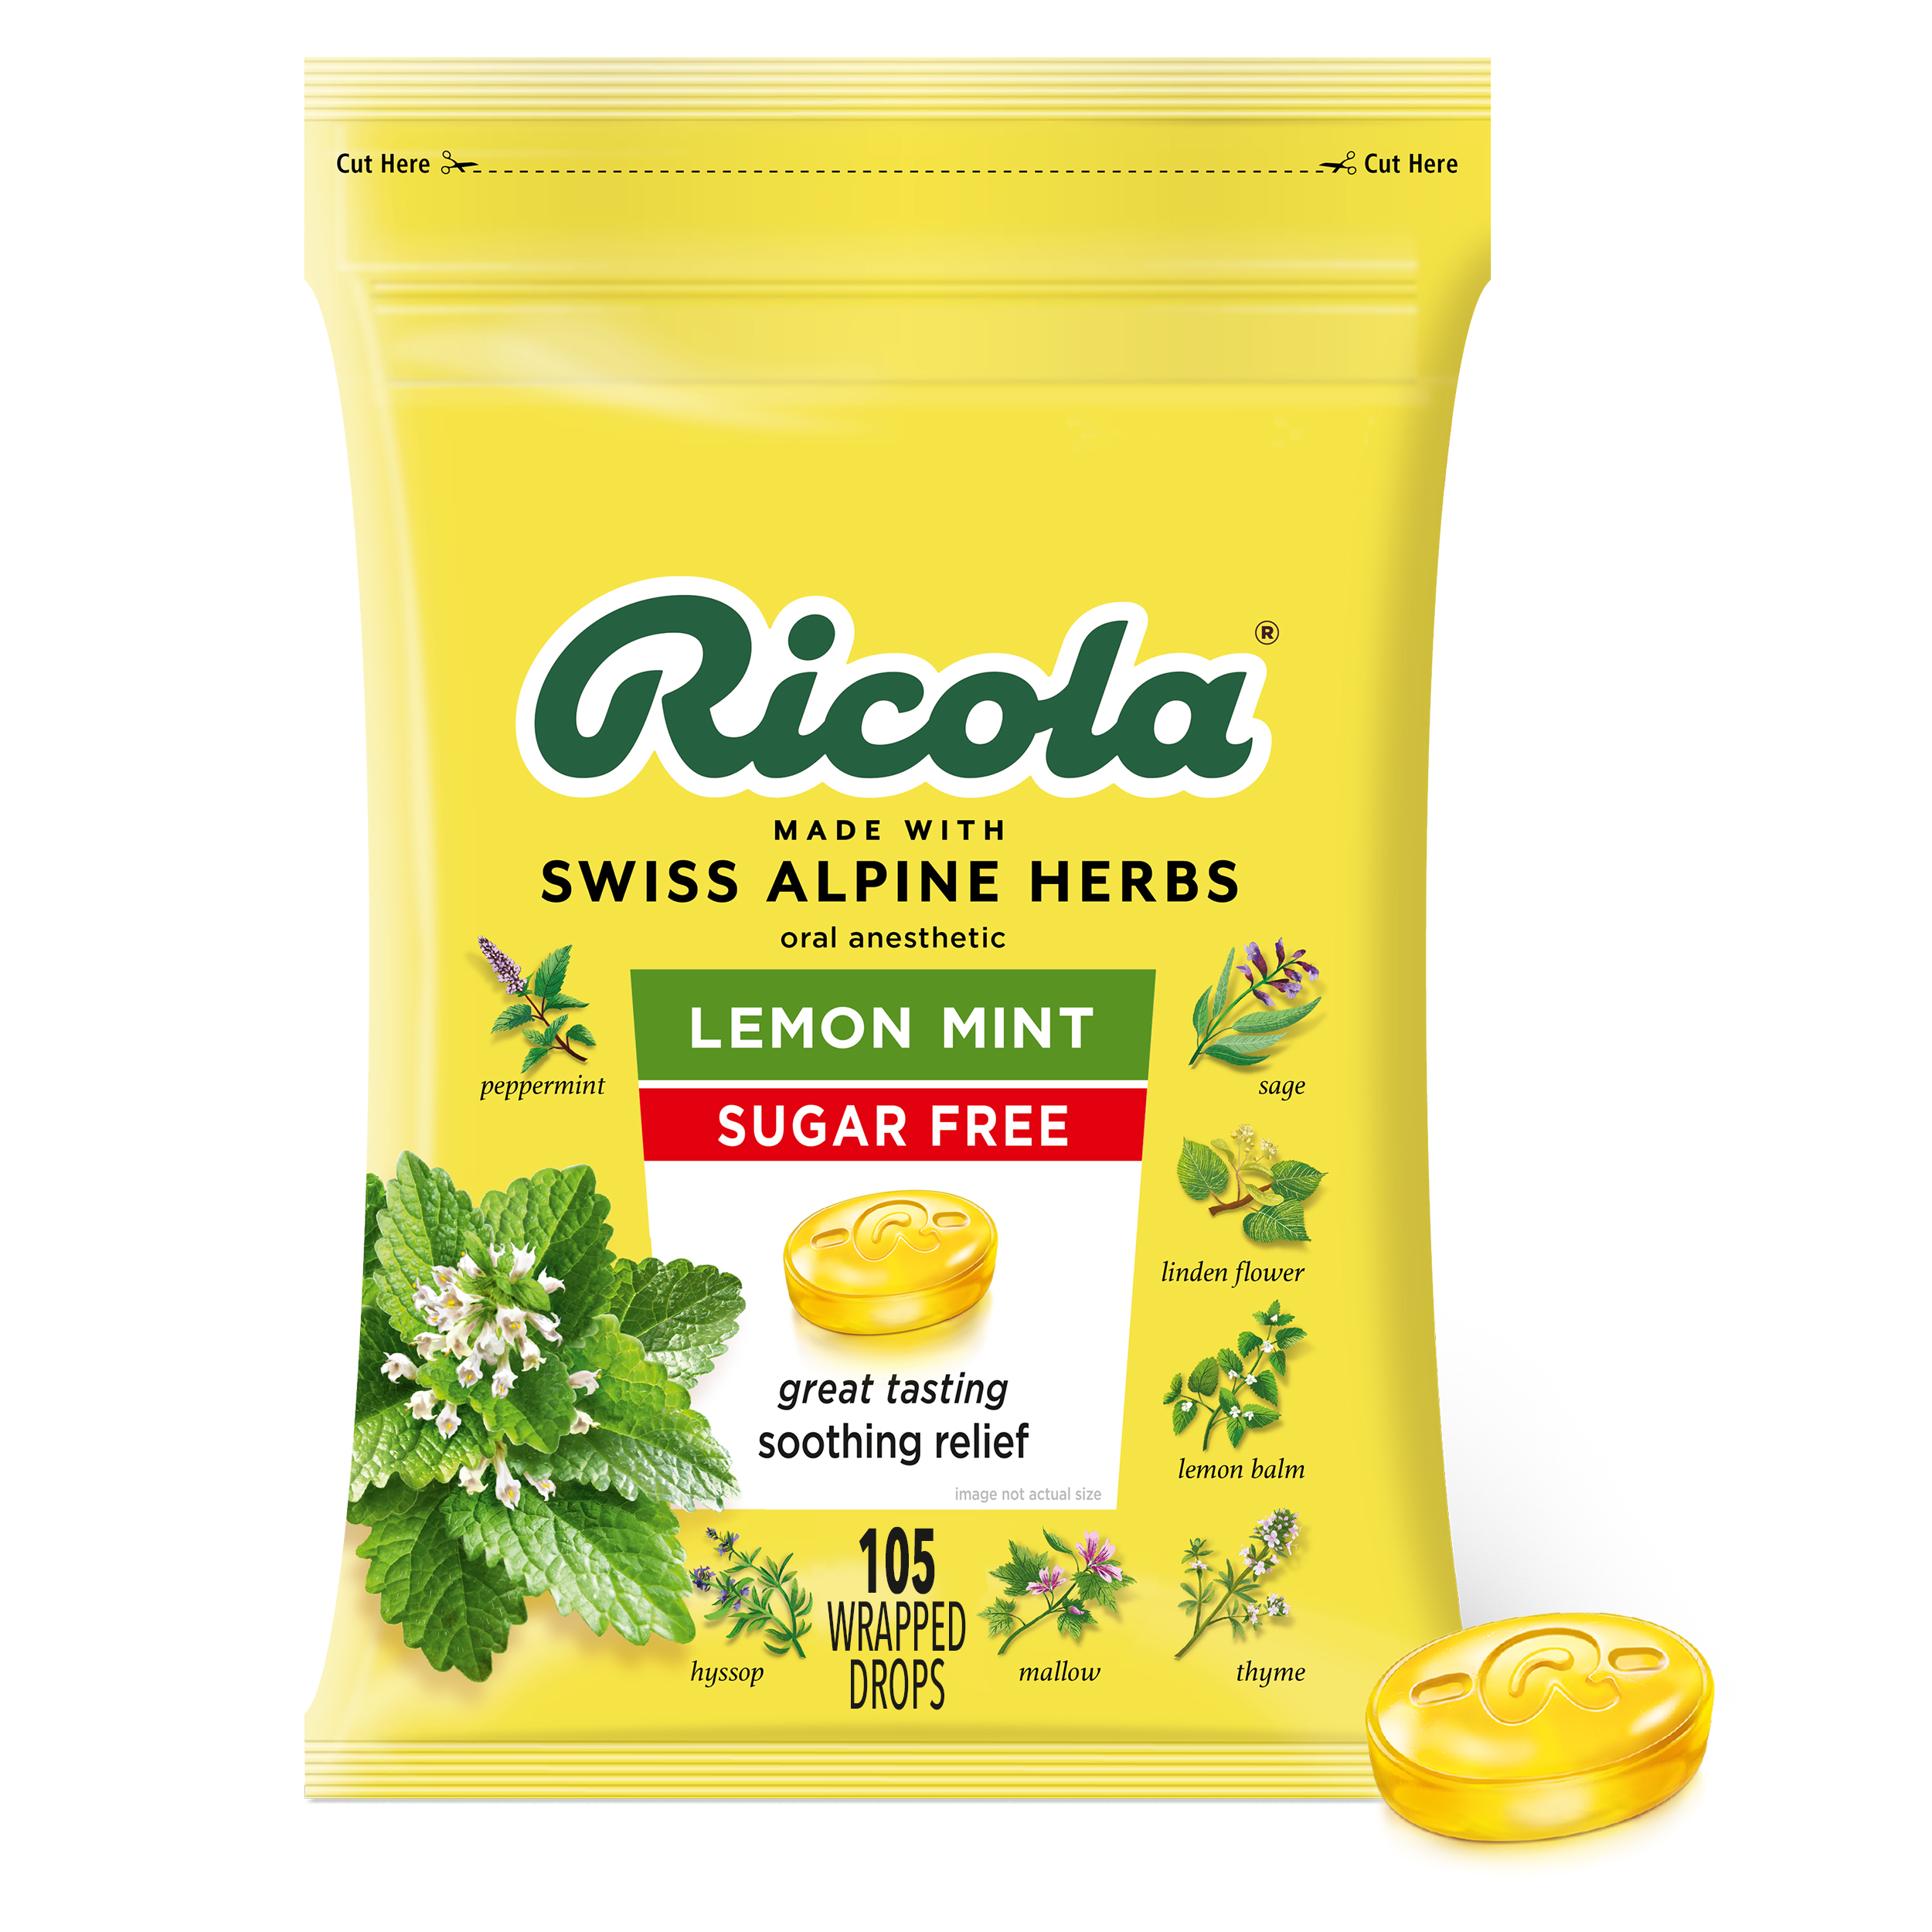 Ricola® Honey-Herb Cough Suppressant Throat Drops, 50 ct - City Market